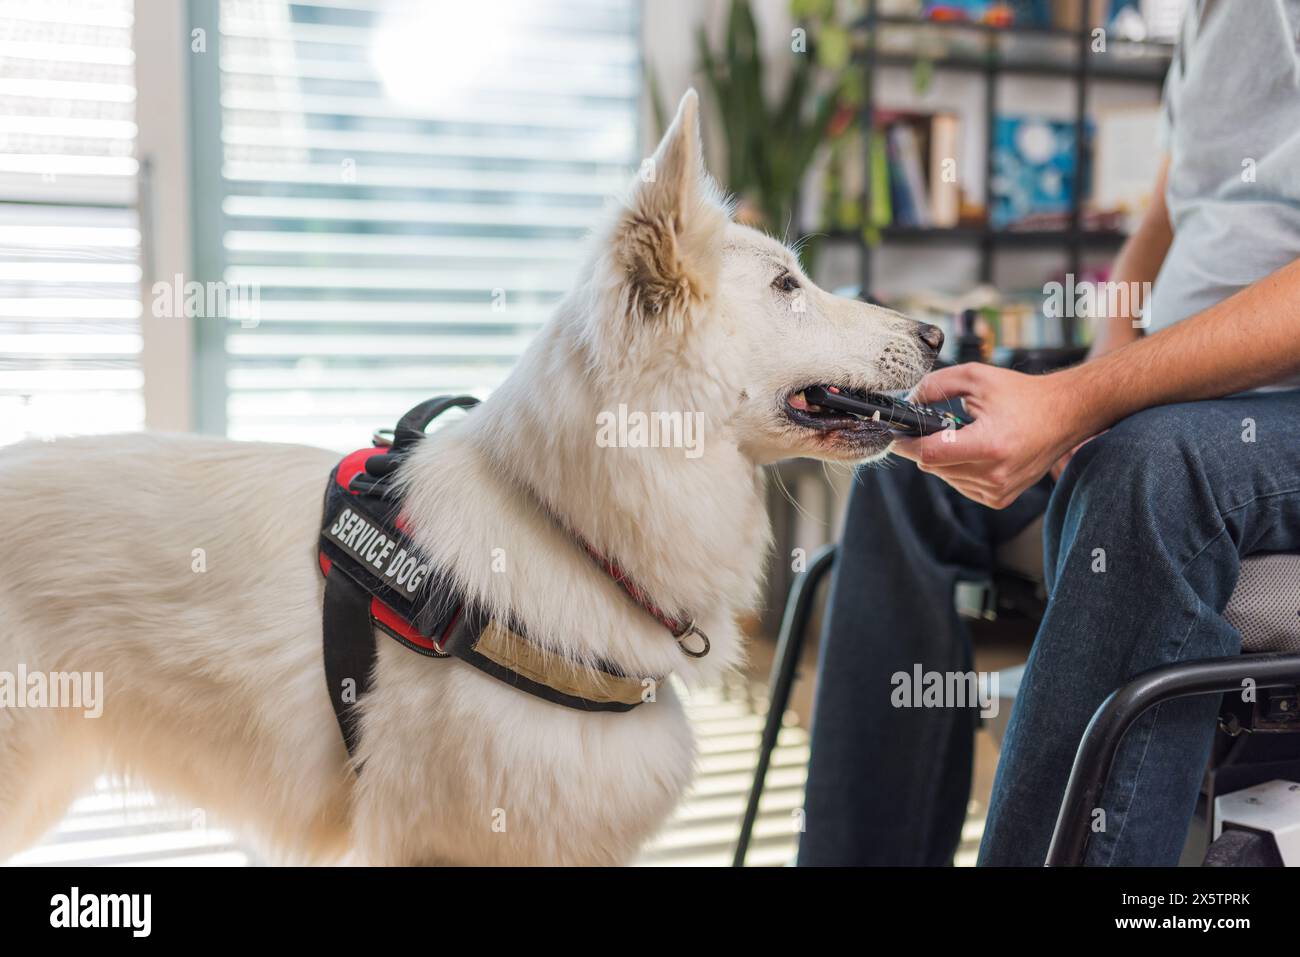 Ausgebildeter Servicehund, der auf einen Befehl seines Besitzers im Rollstuhl reagiert und die heruntergefallene Fernbedienung aufnimmt. Stockfoto